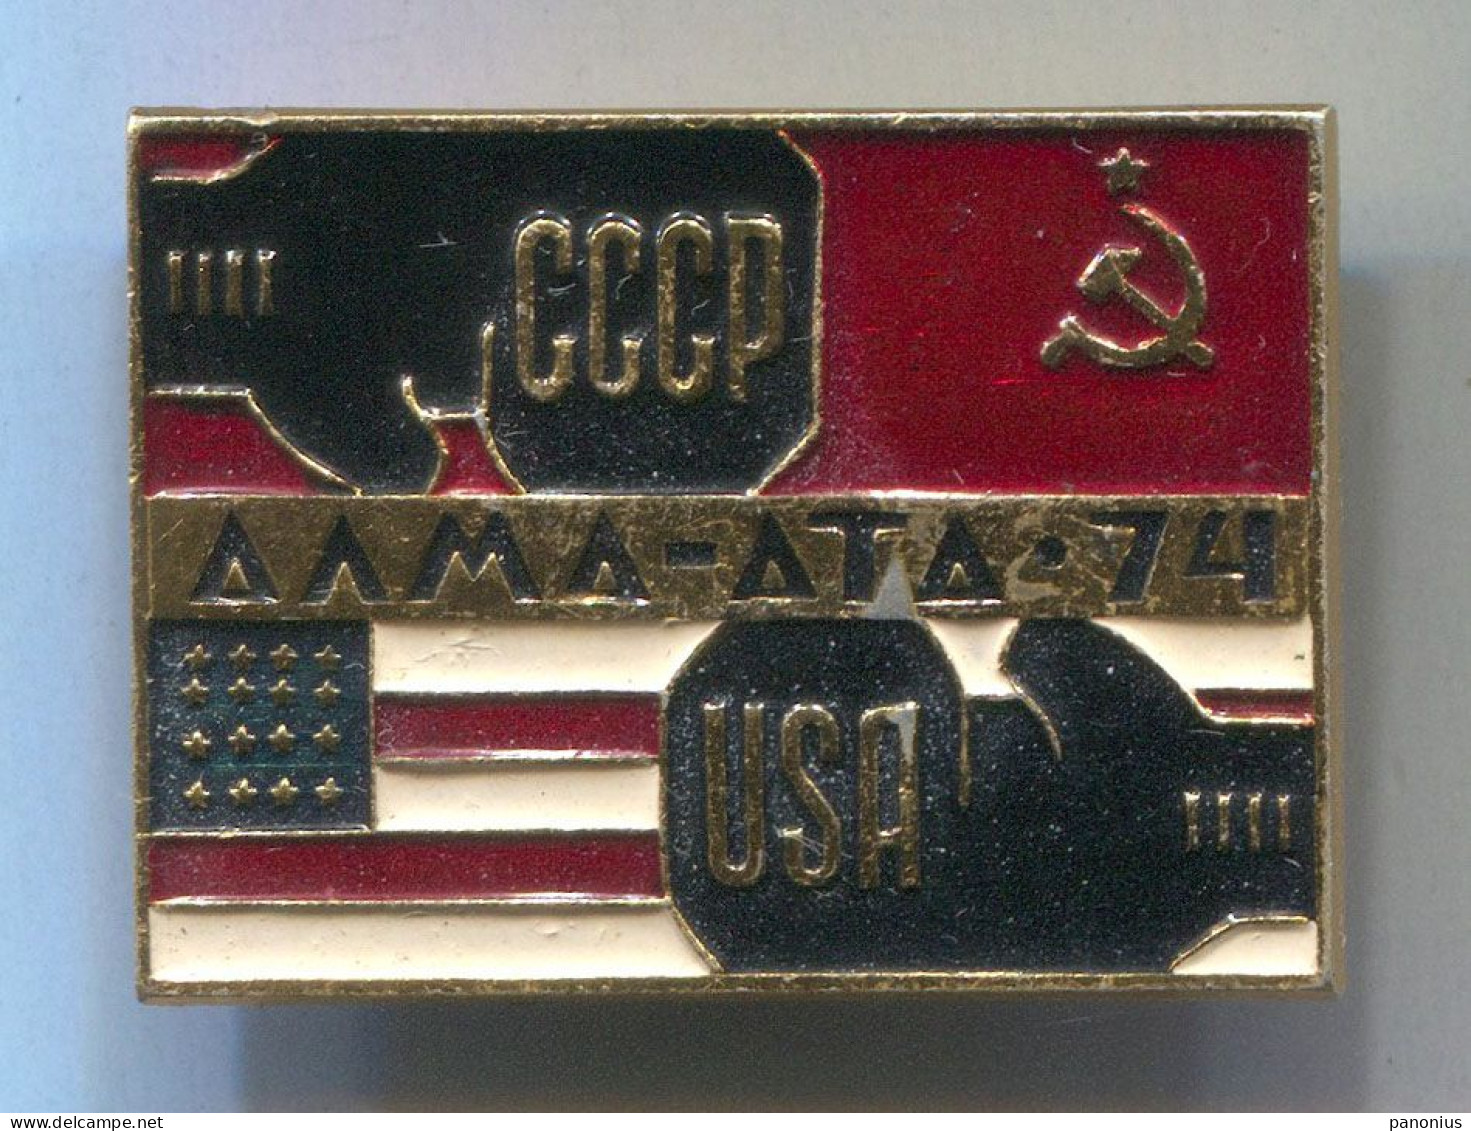 Boxing Box Boxen Pugilato - Alma - Ata Kazakhstan 1974. USSR Russia Vs USA, Vintage  Pin  Badge  Abzeichen - Boxen